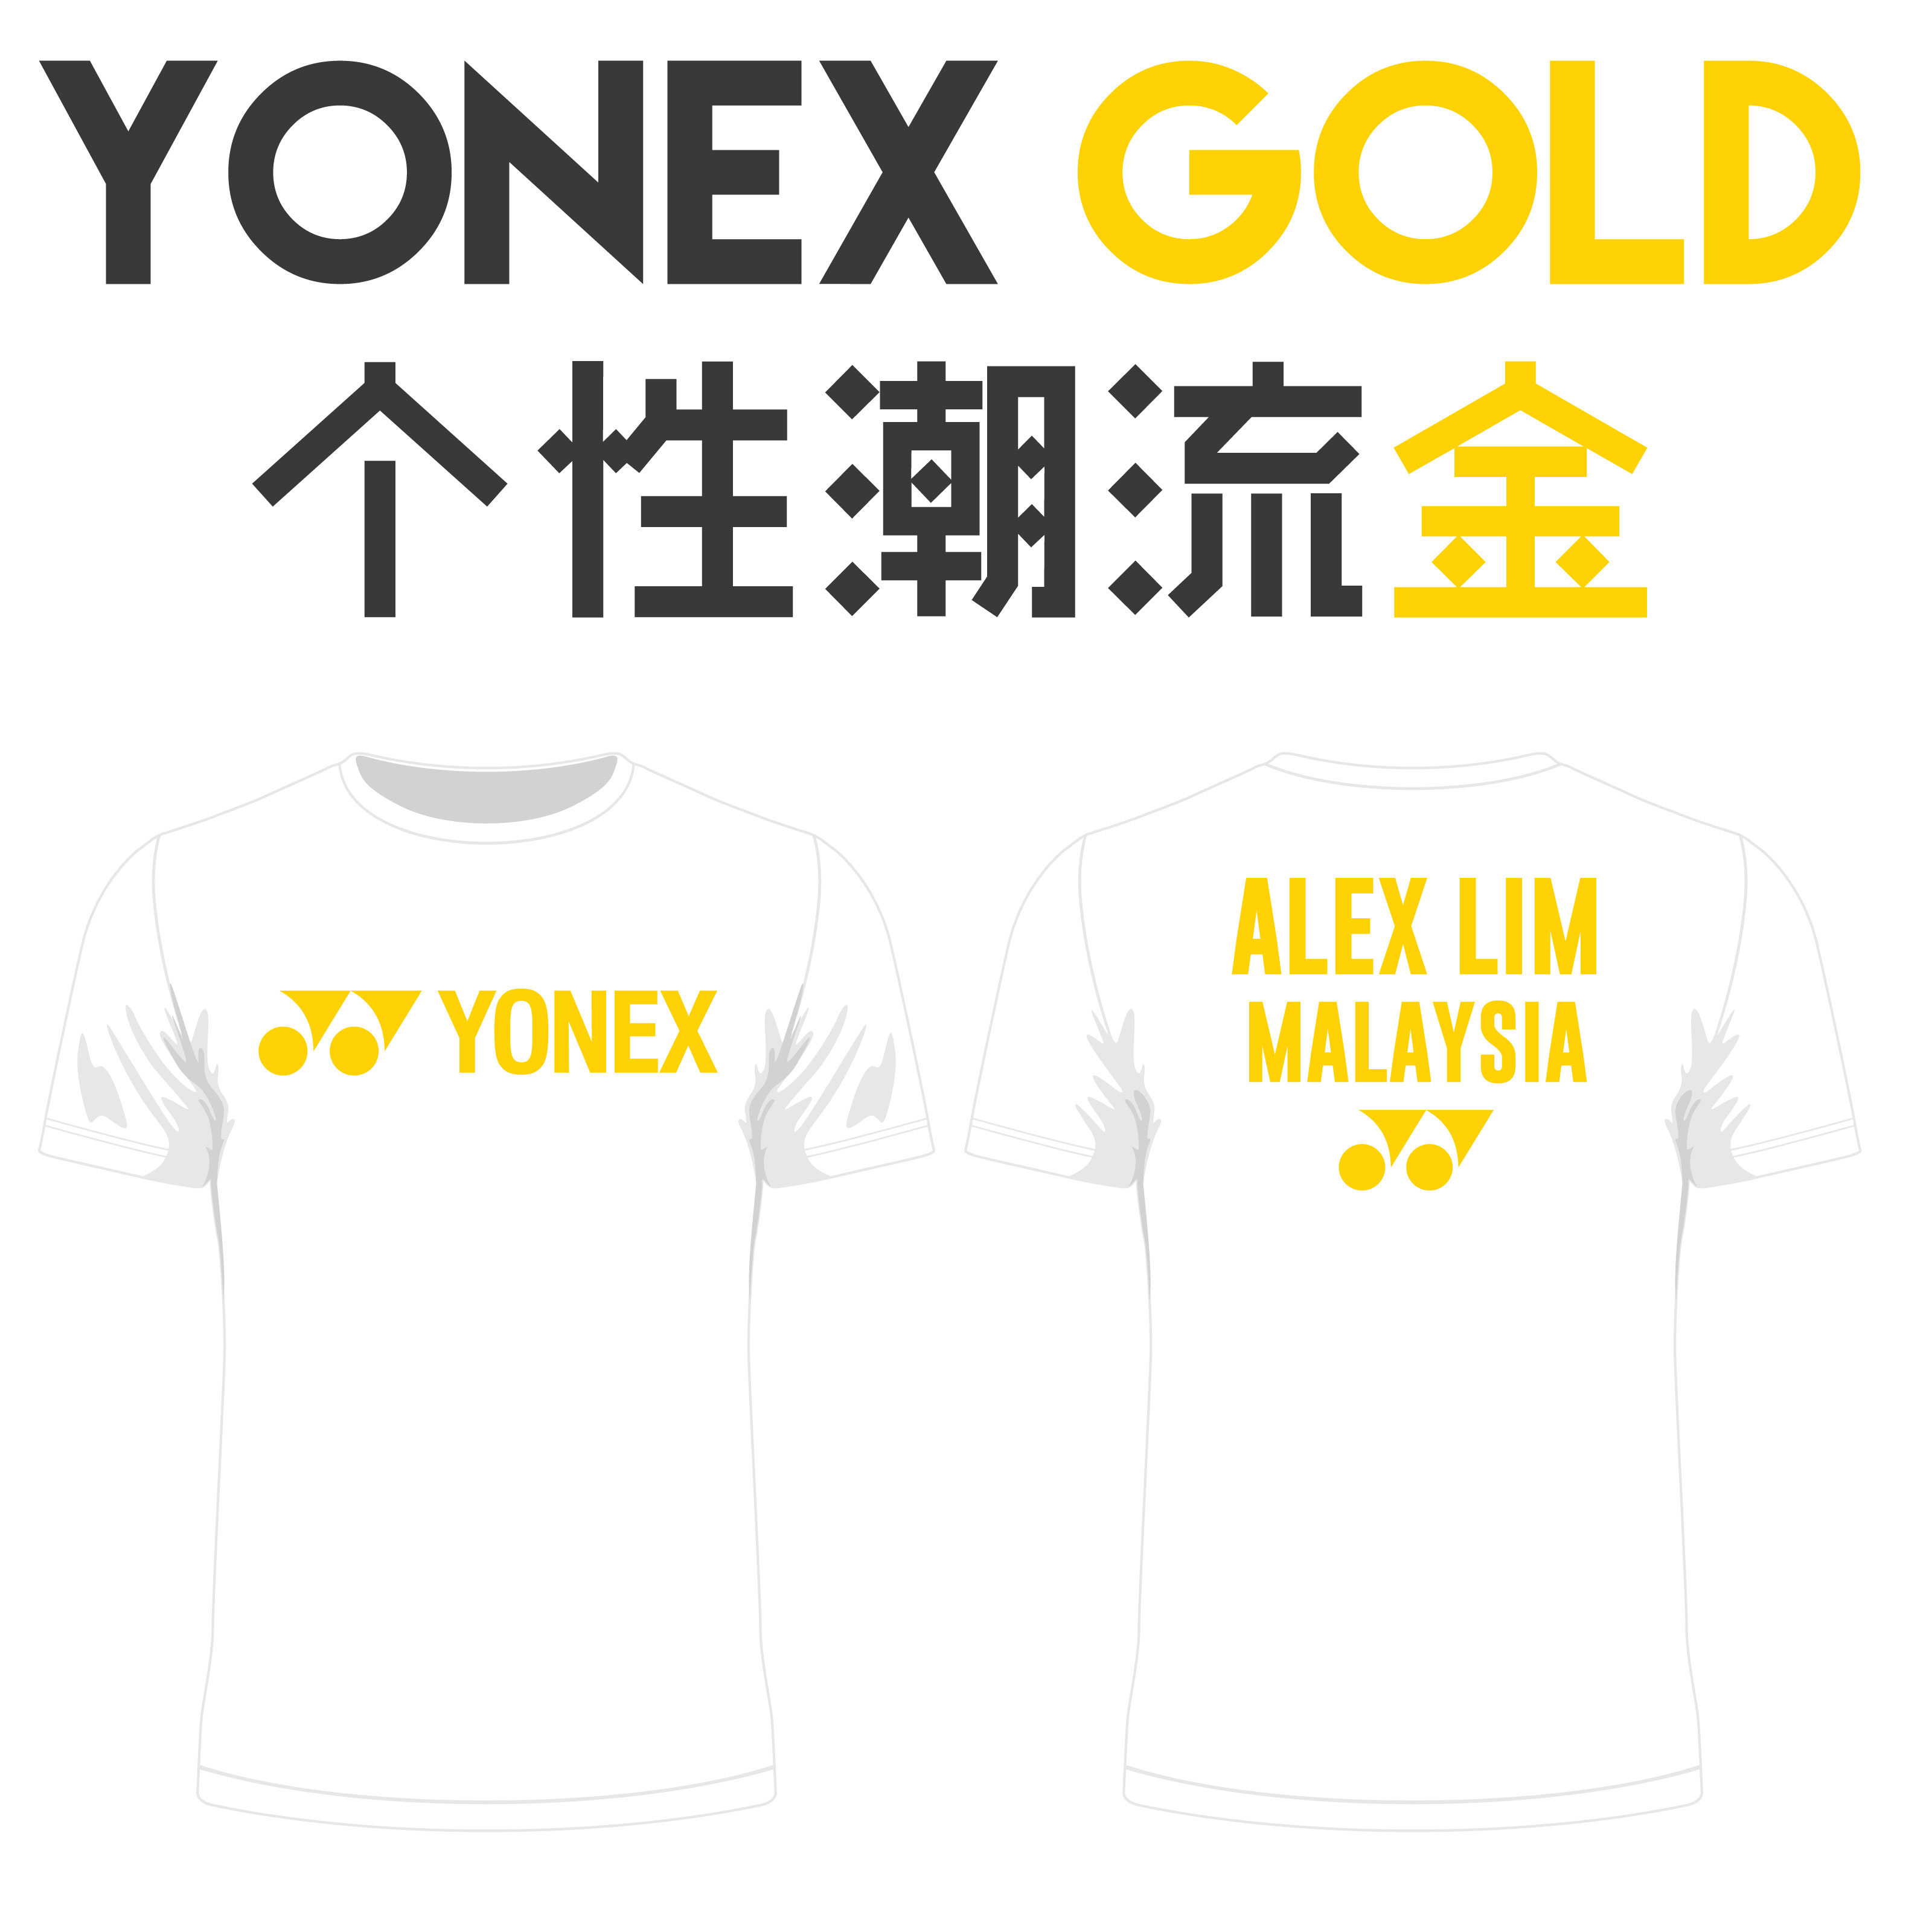 Yonex Shirt - Yonex Gold